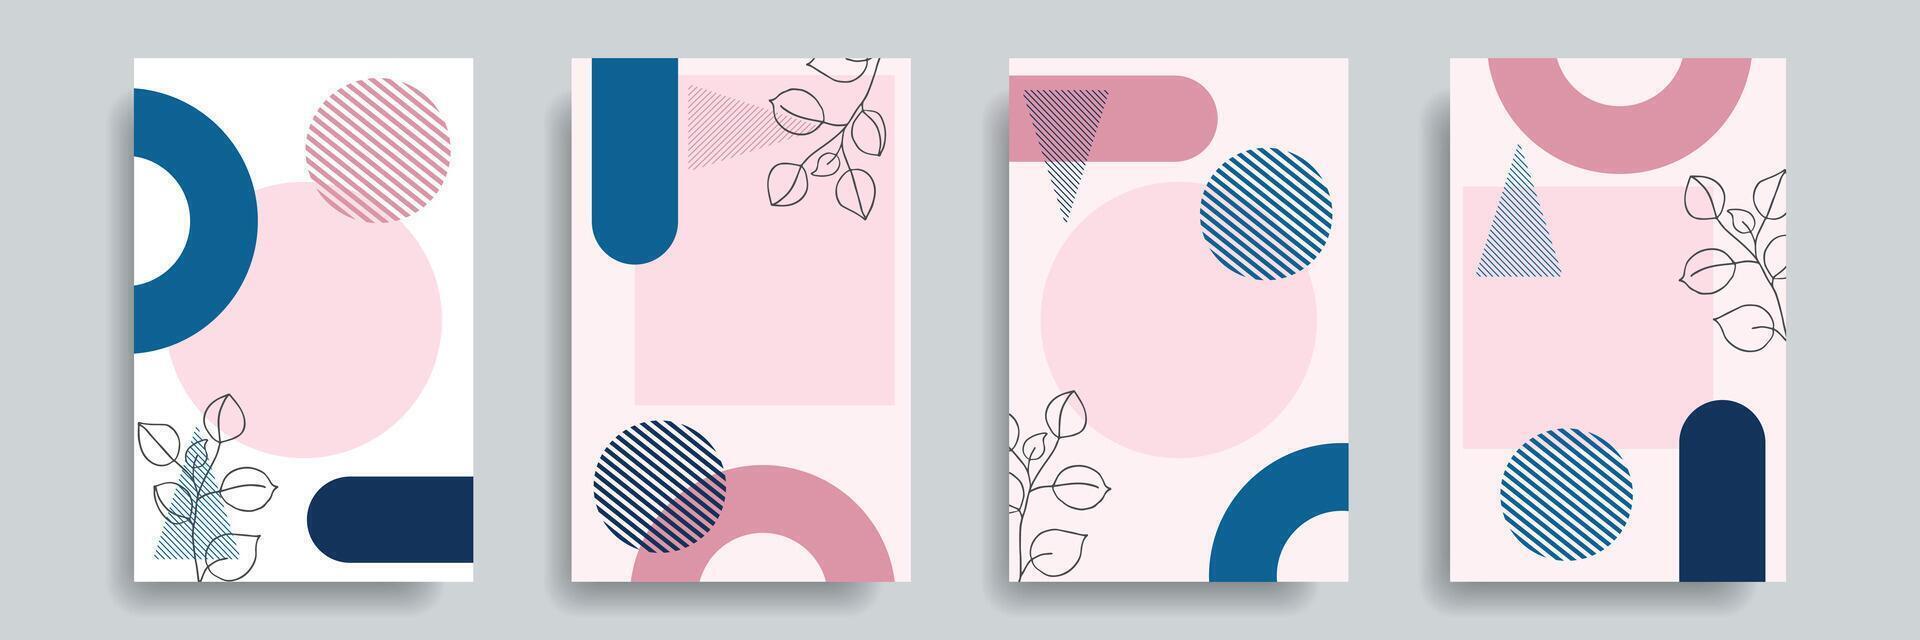 modern abstrakt einstellen von Hintergründe, Abdeckungen, minimal Design. bunt geometrisch Hintergrund. Platz zum Text. vektor